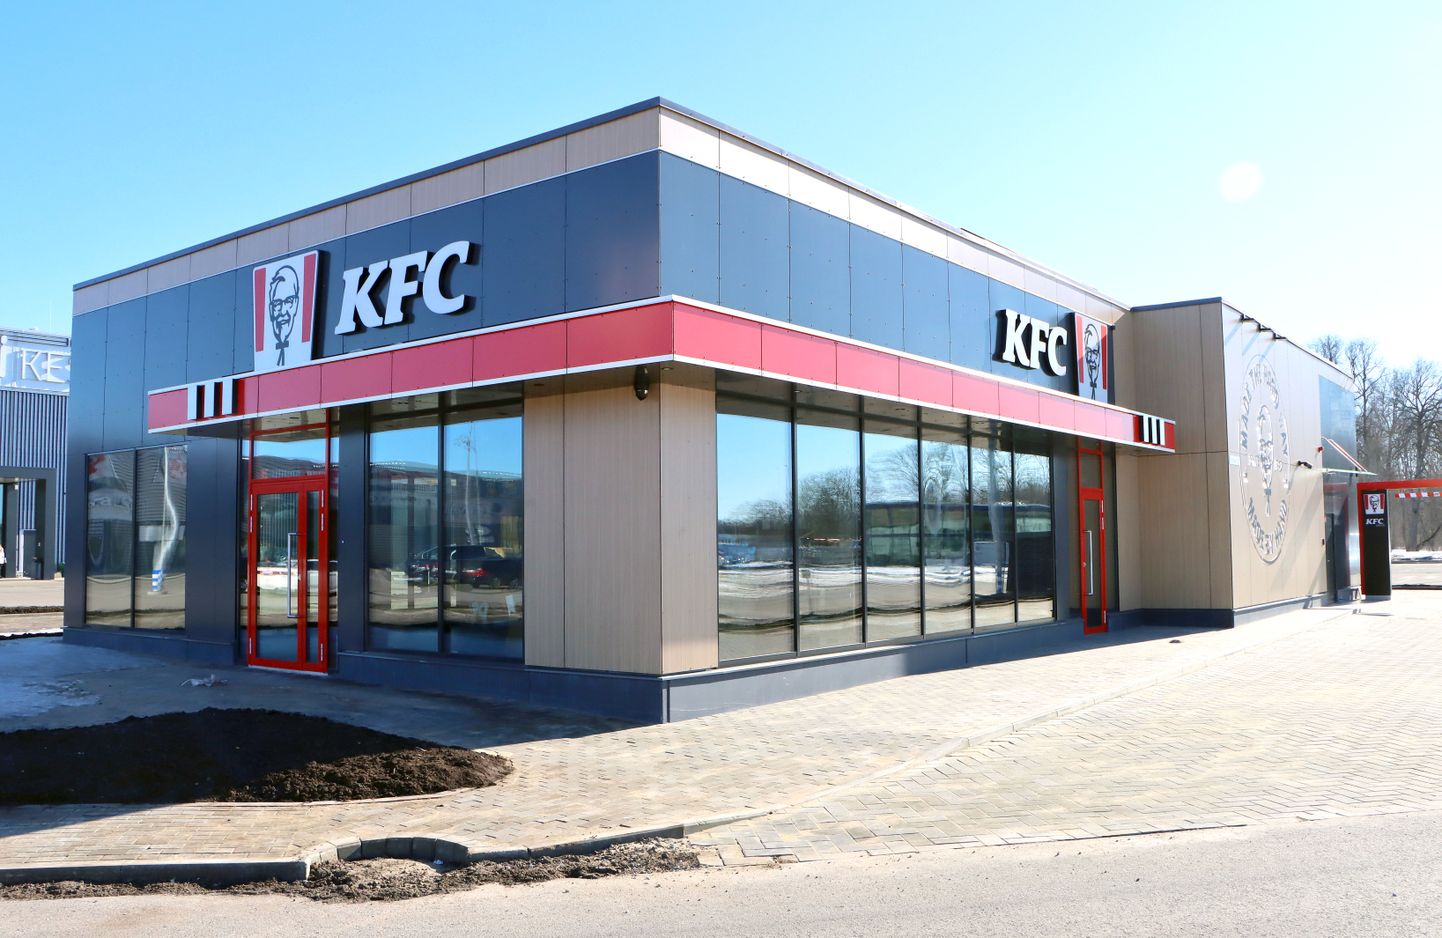 Ресторан "KFC" в Йыхви распахнет двери во второй половине следующей недели.